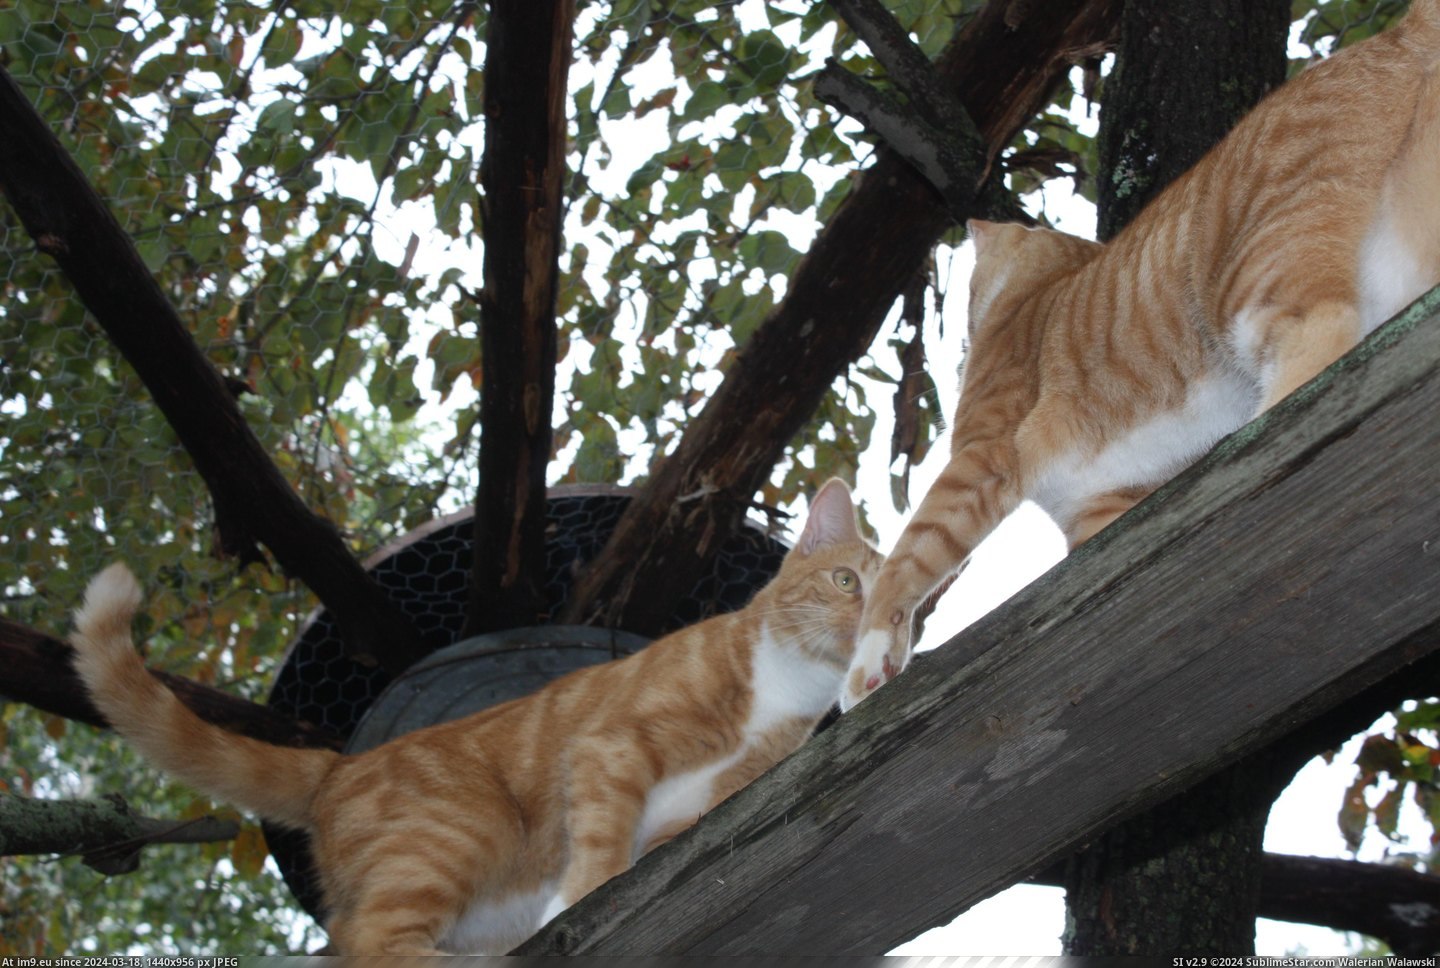 #Cats #Pen #Cat [Cats] Cat pen, cats inside! 3 Pic. (Image of album My r/CATS favs))